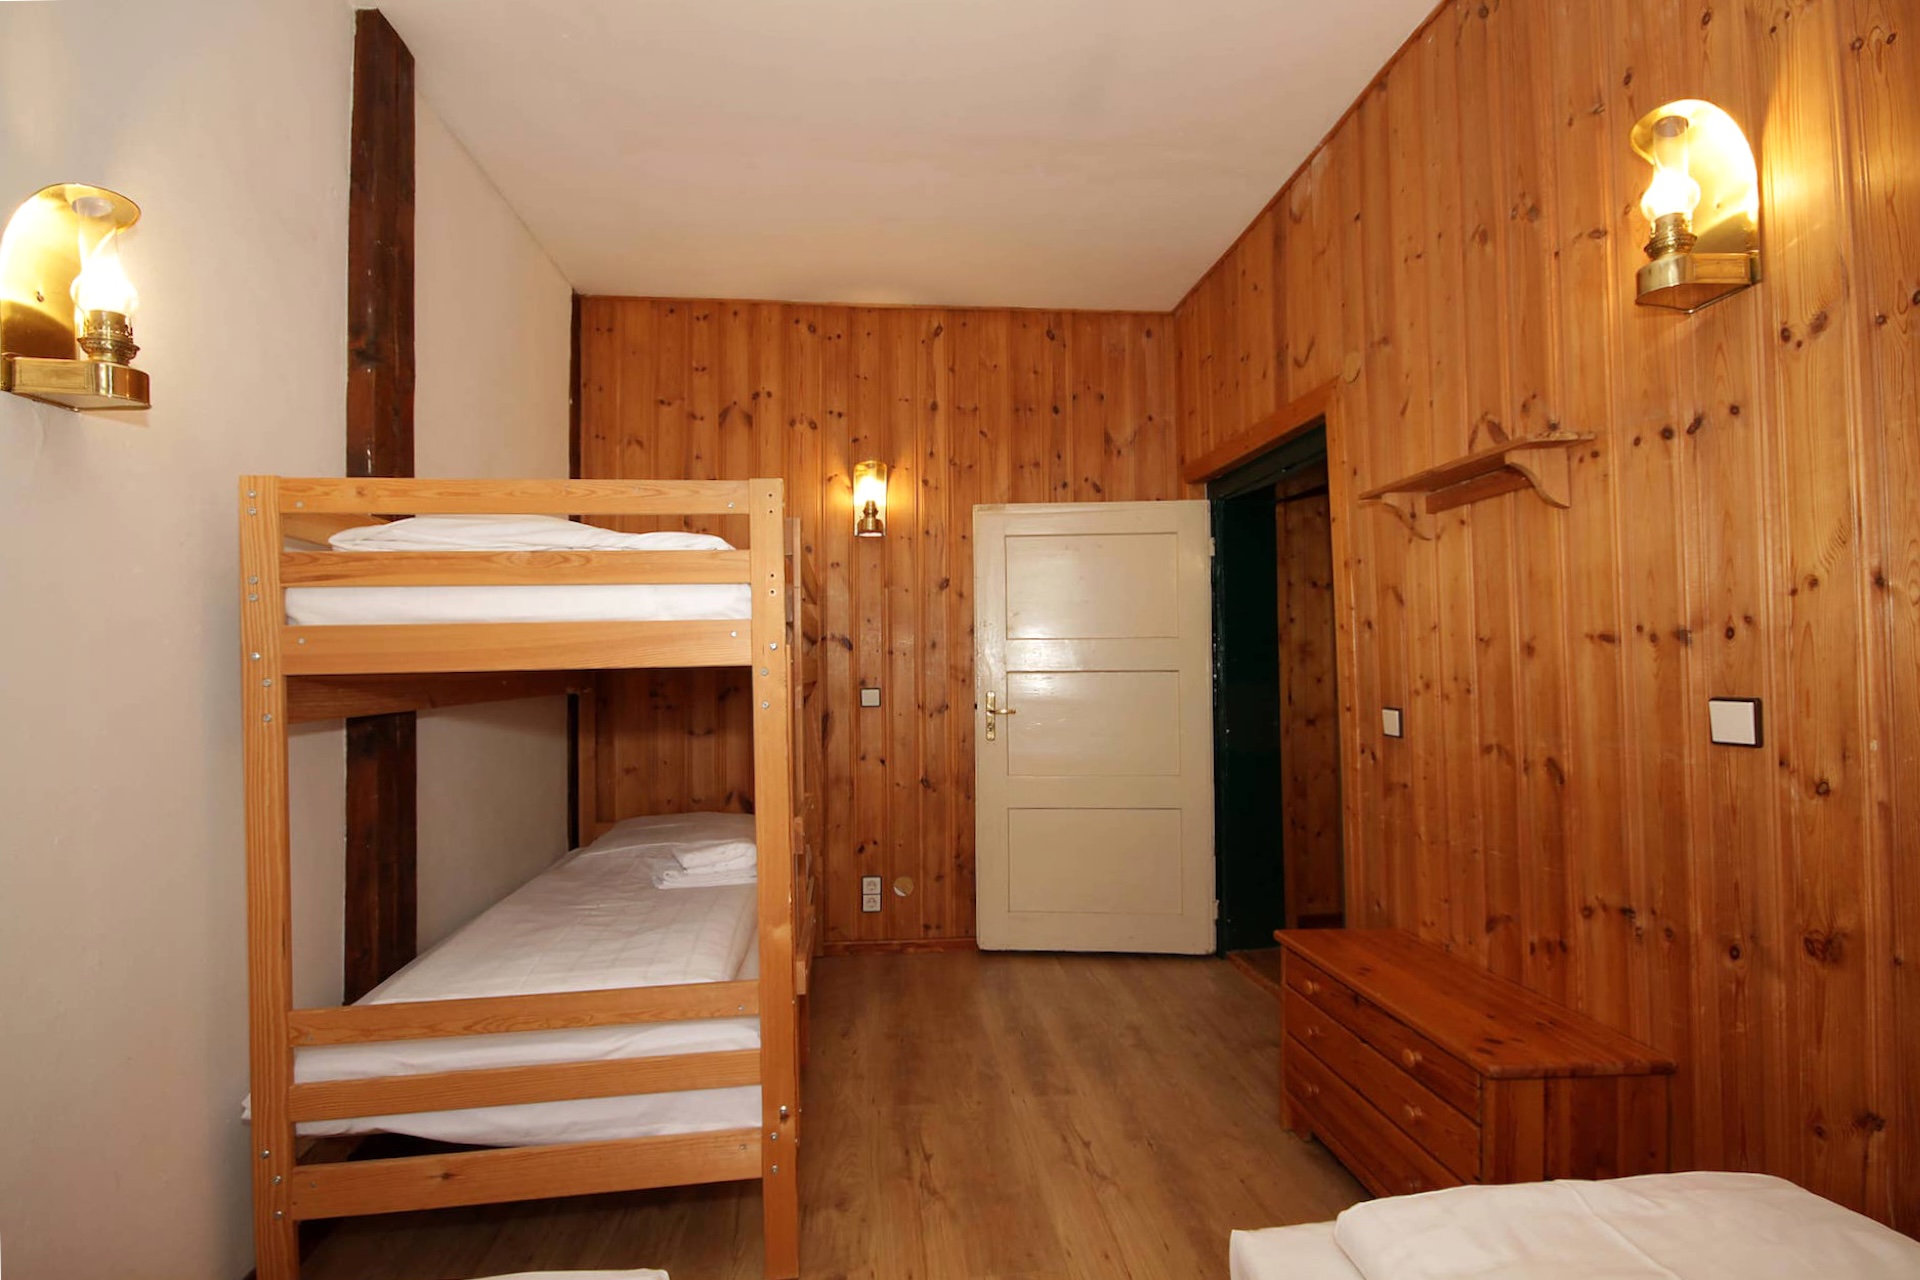 Ferienwohnung Specht - Schlafzimmer 1 mit zwei Einzelbetten und einem Etagenbett